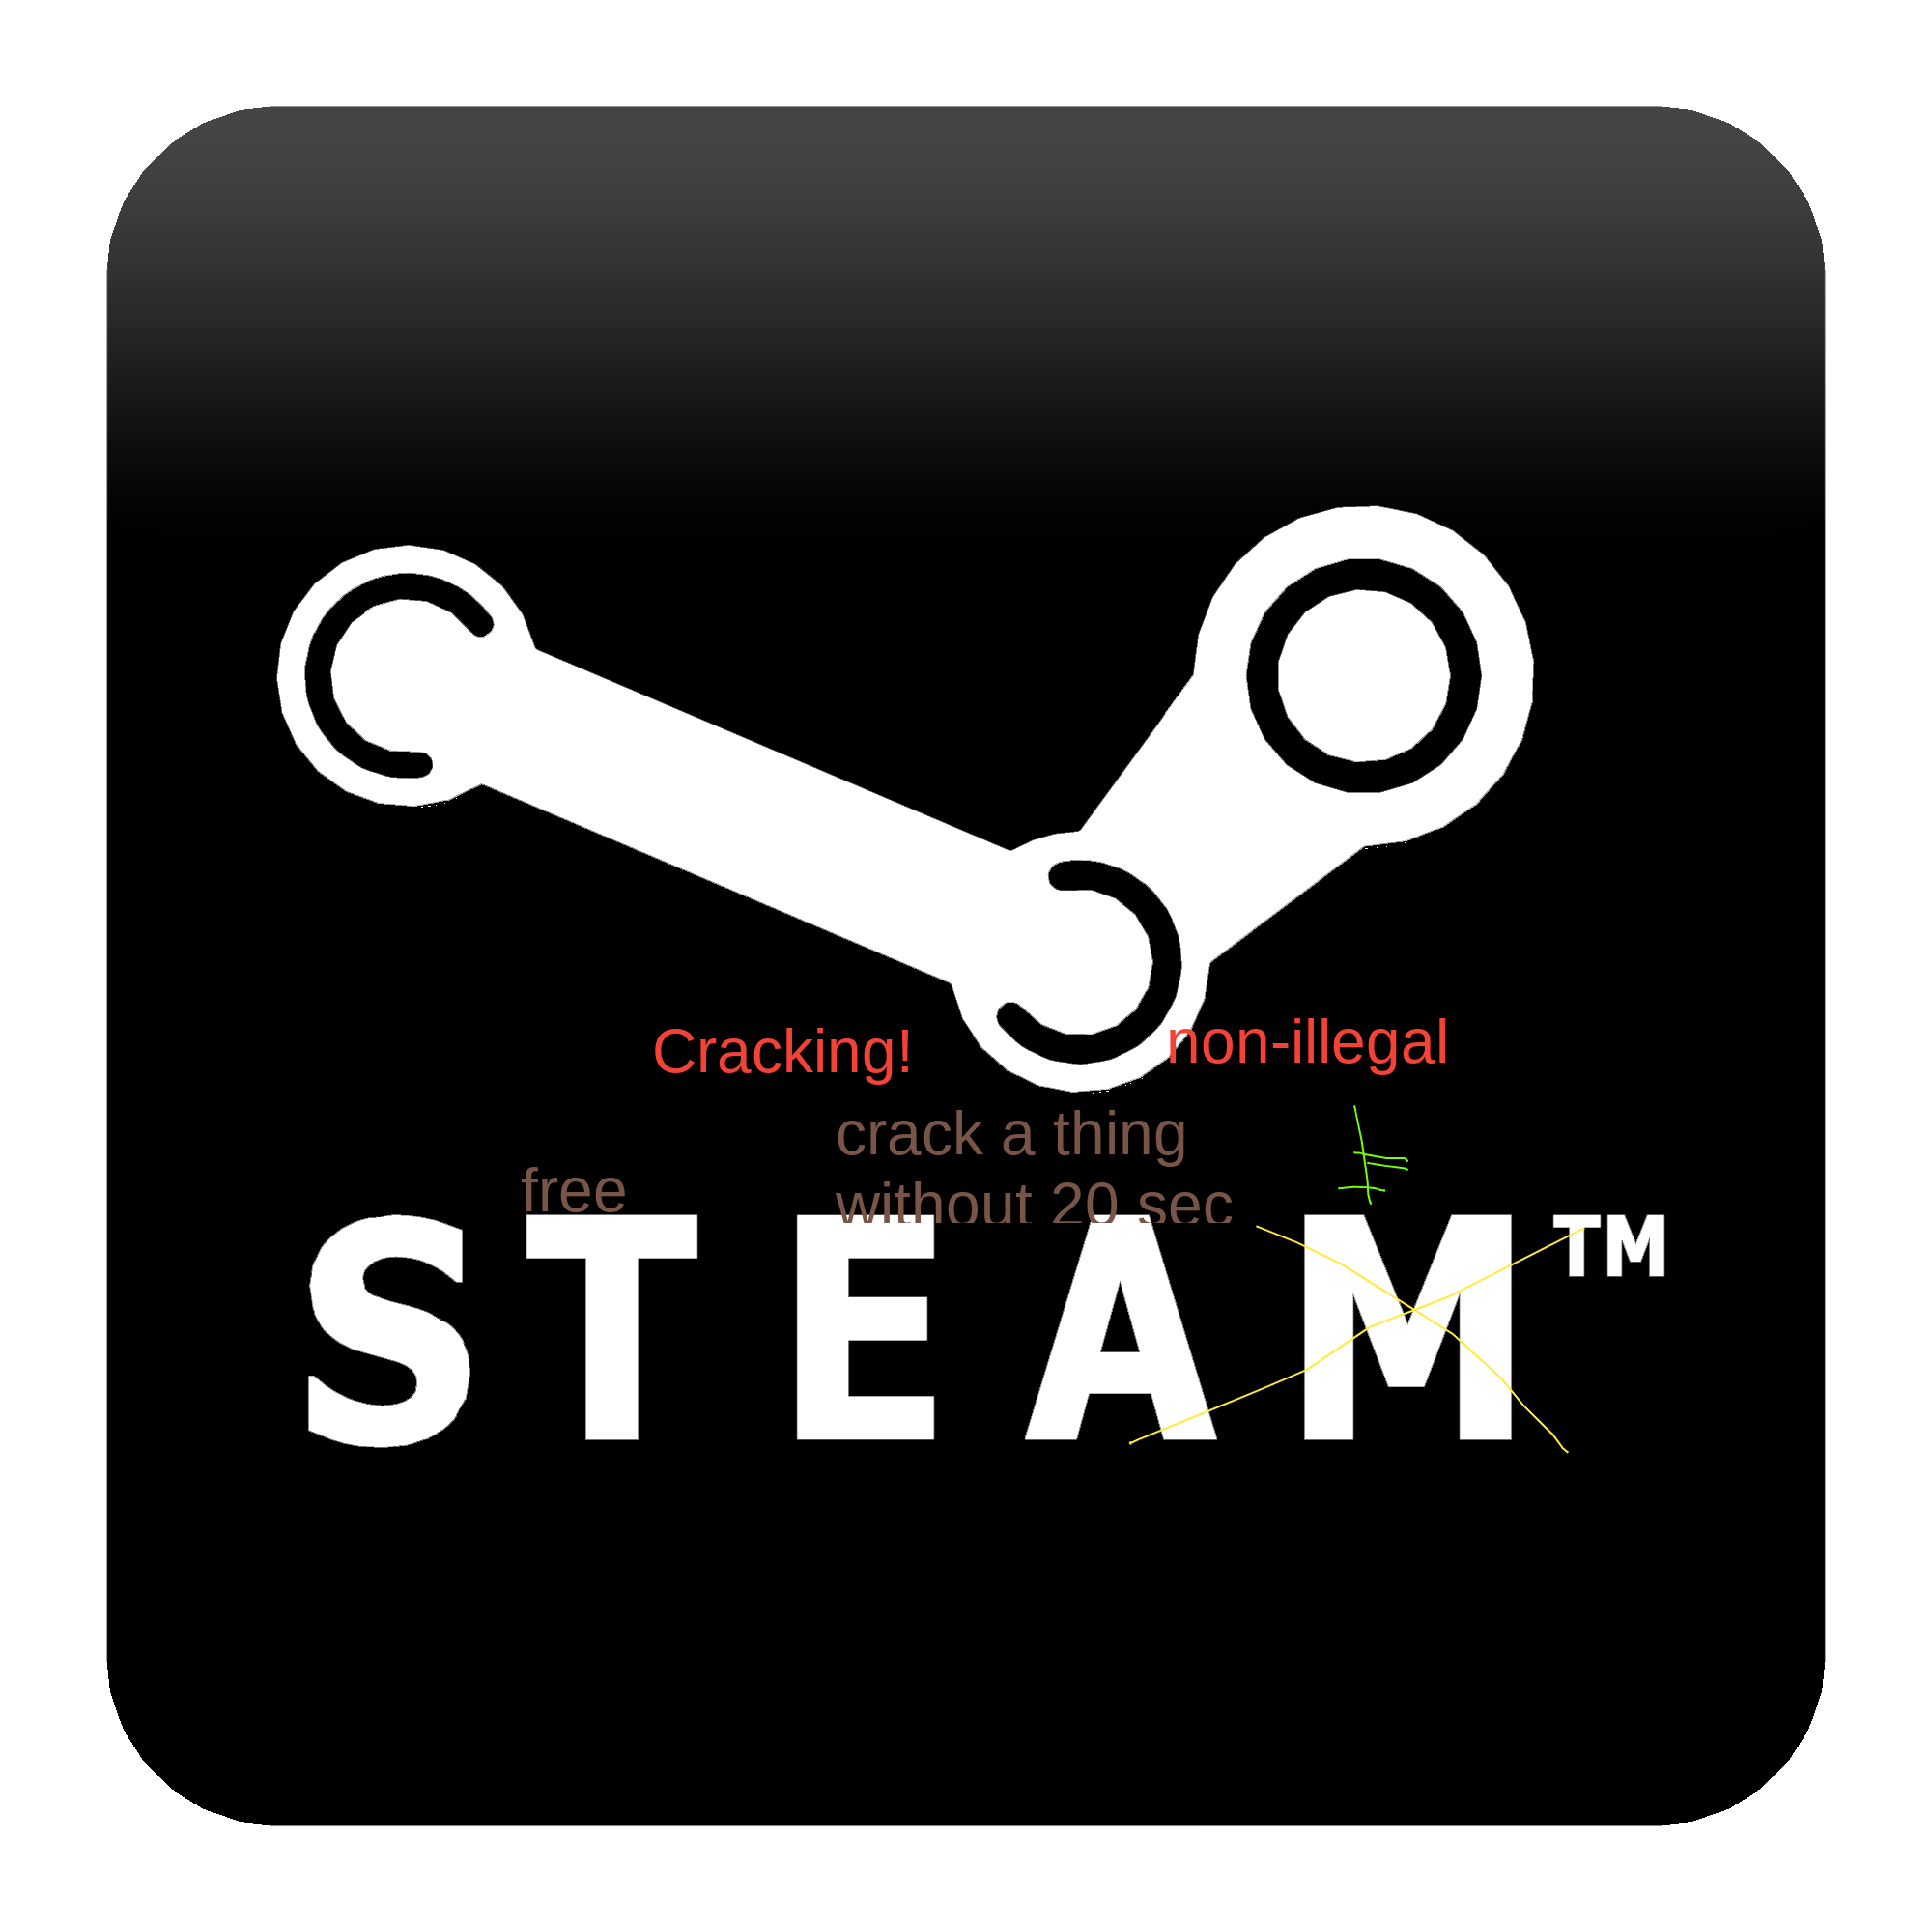 Steamcrack logo